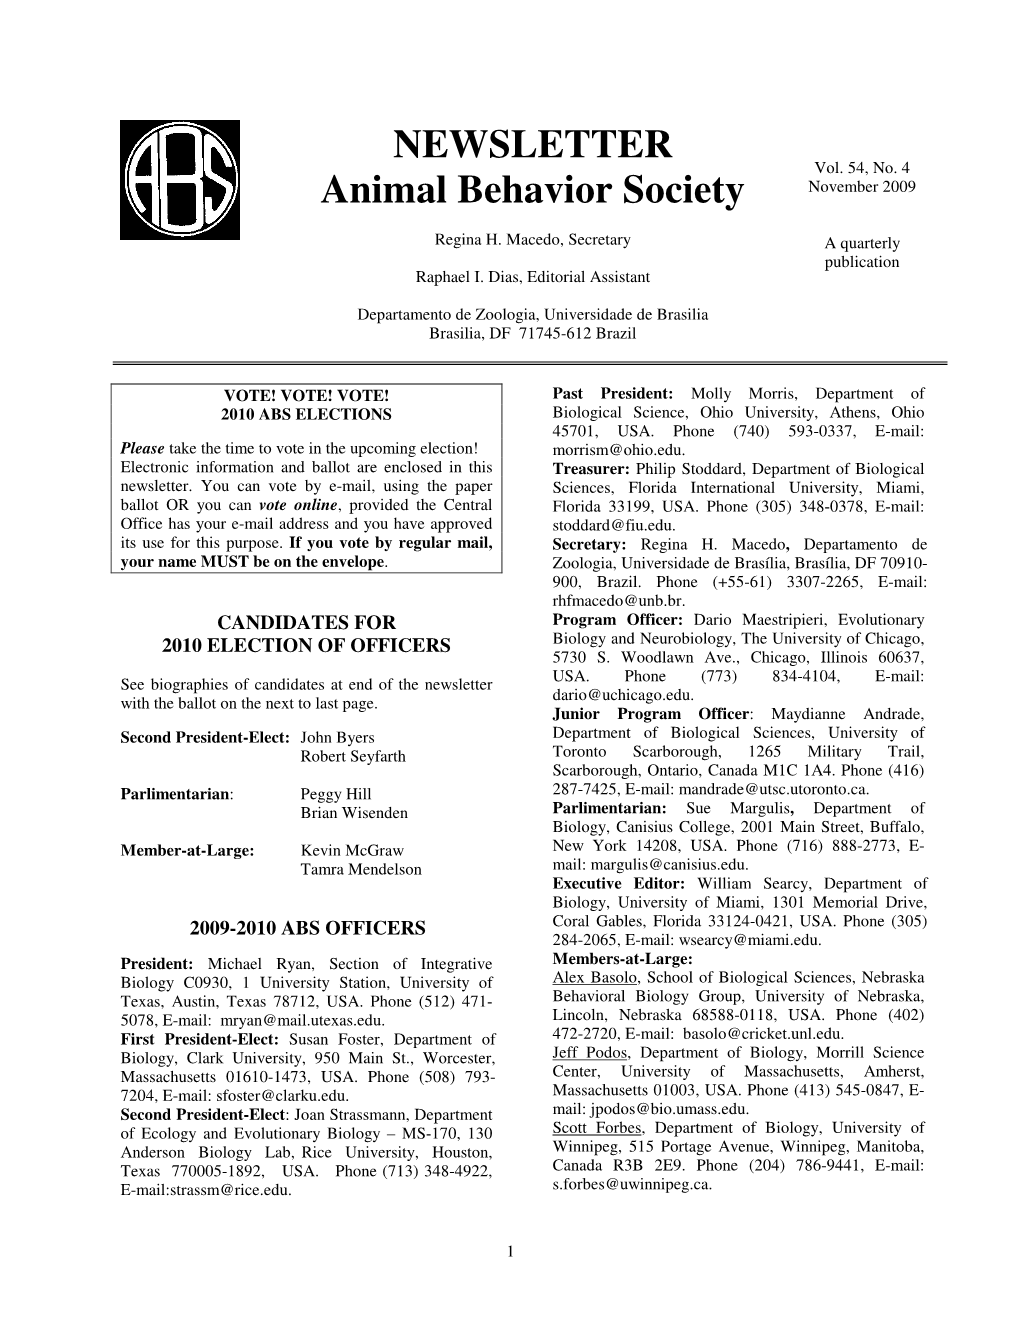 NEWSLETTER Animal Behavior Society